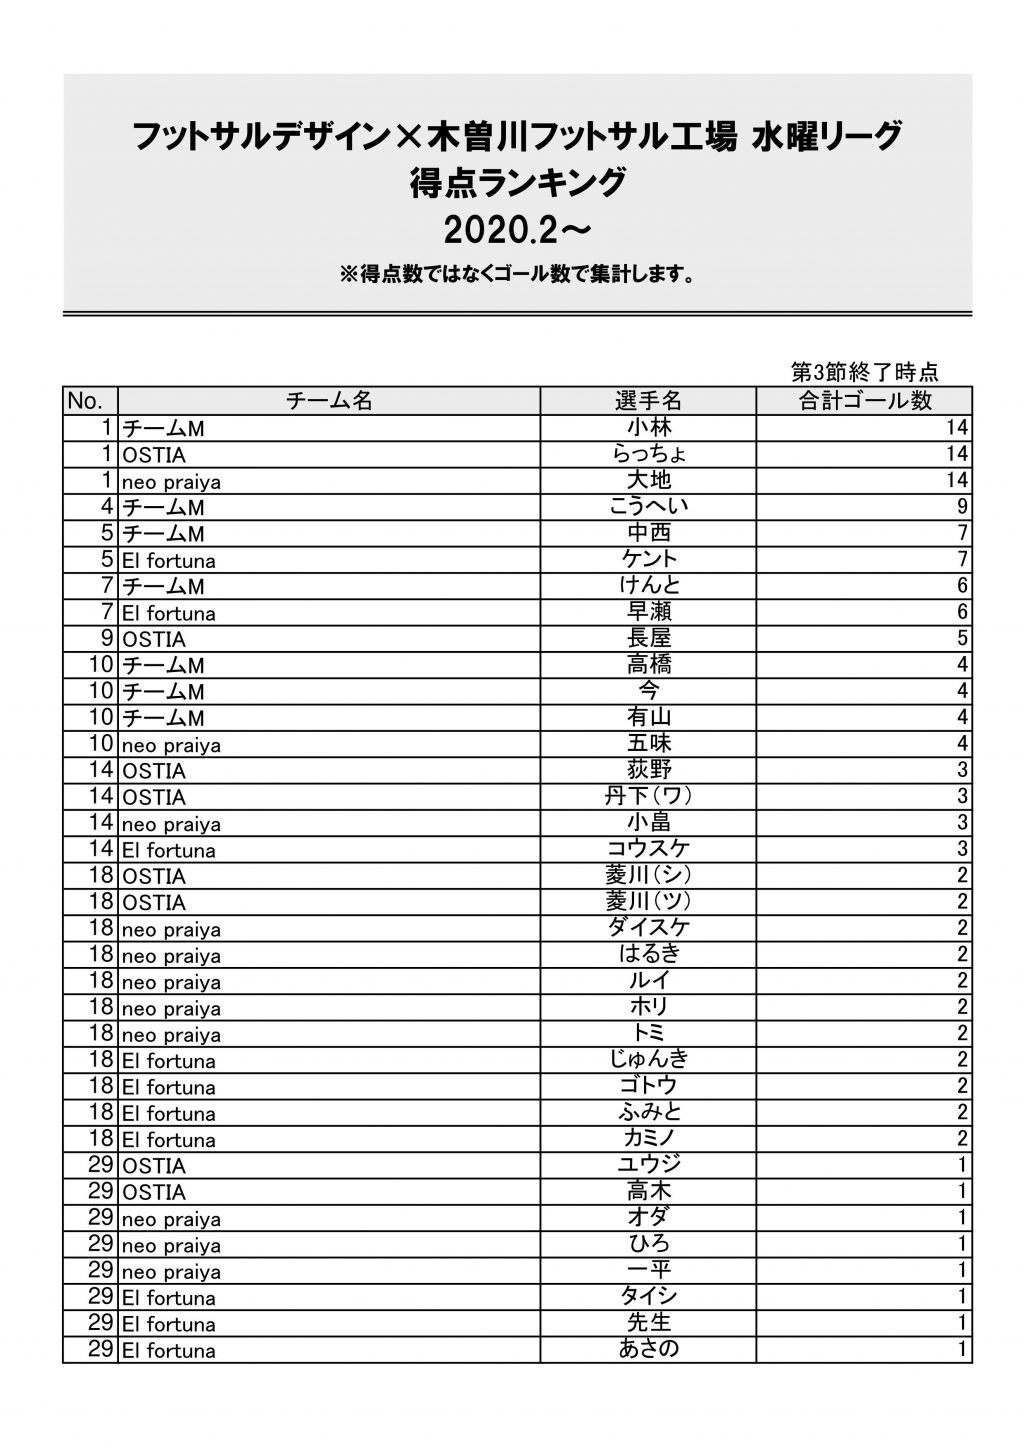 木曽川水曜リーグ2020.2~シーズン第3節得点ランキング